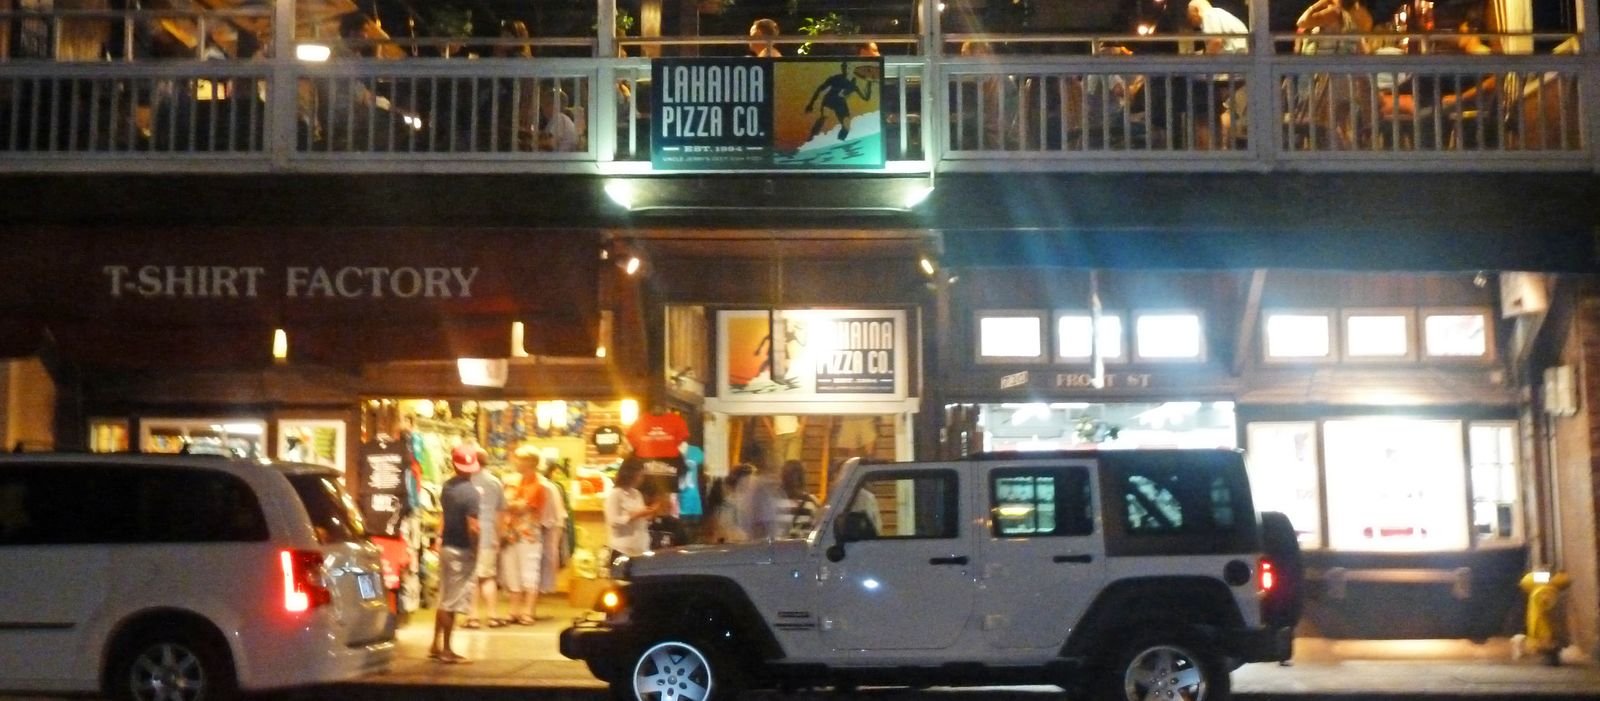 Lahaina Pizza Company